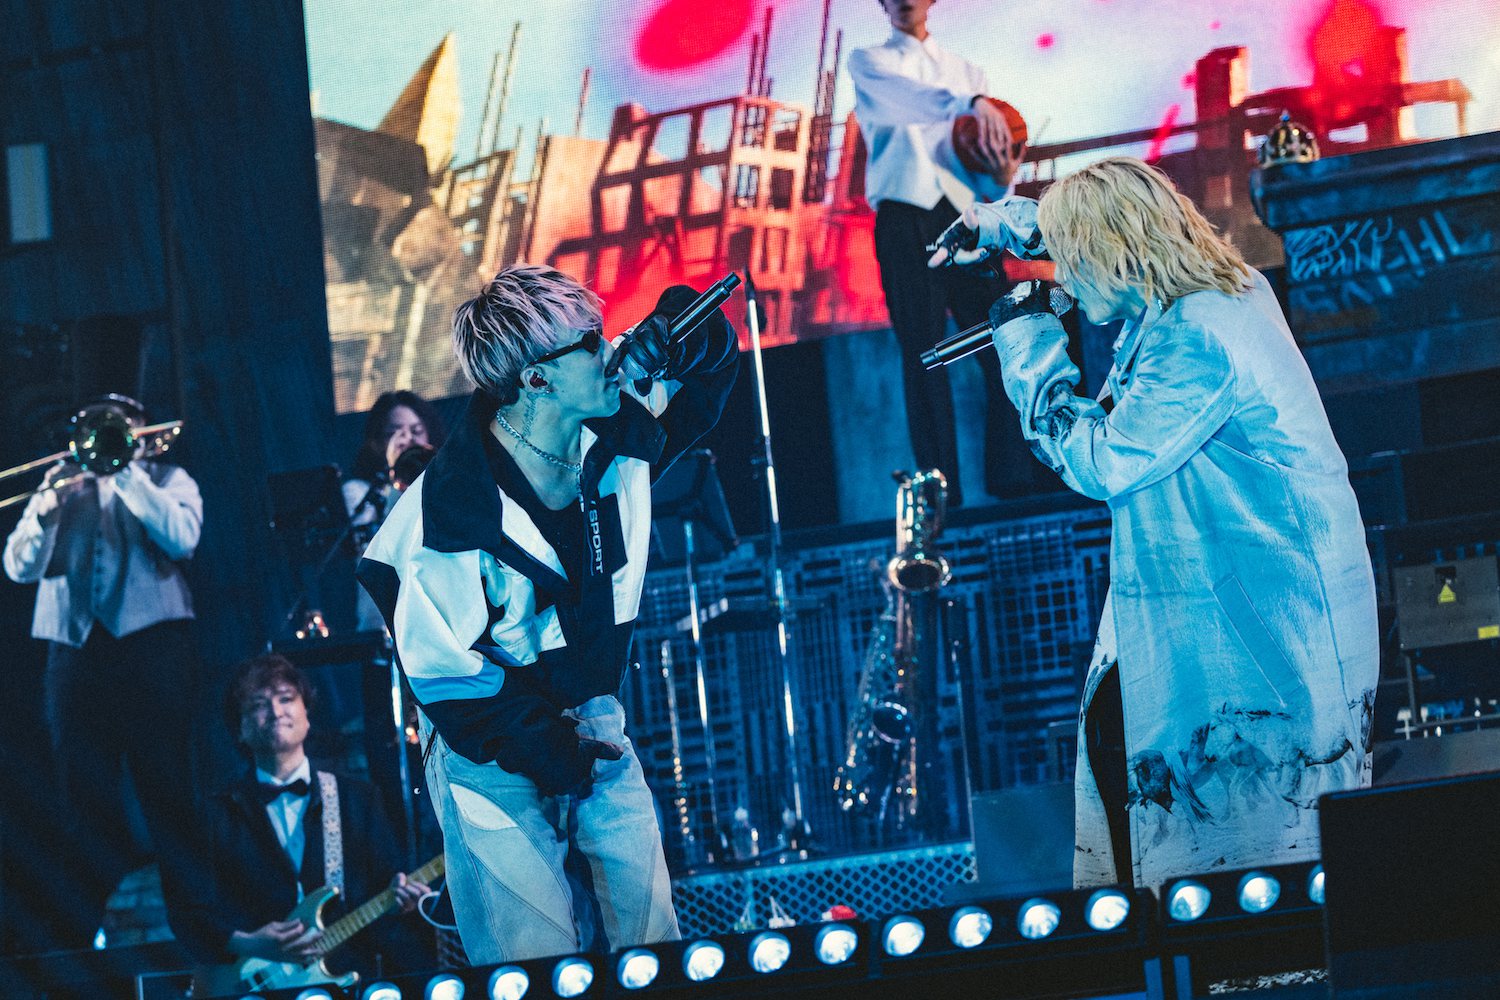 日本歌手SKY-HI（右）携手嘻哈好友ZI在演唱会上演出。图／爱贝克思提供